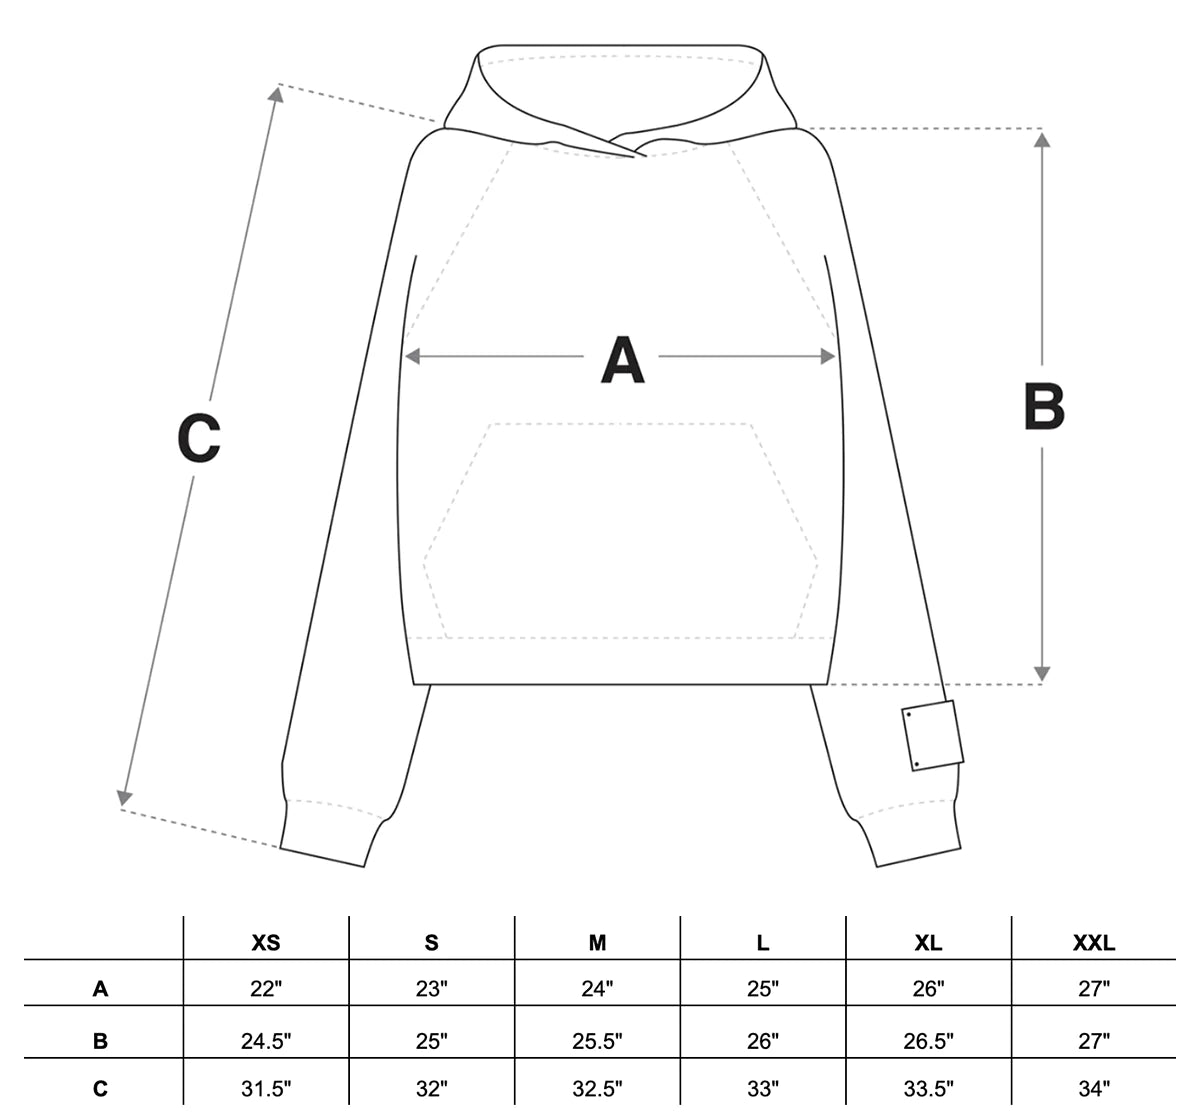 Mountain Logo Hooded Sweatshirt in Black Size Guide